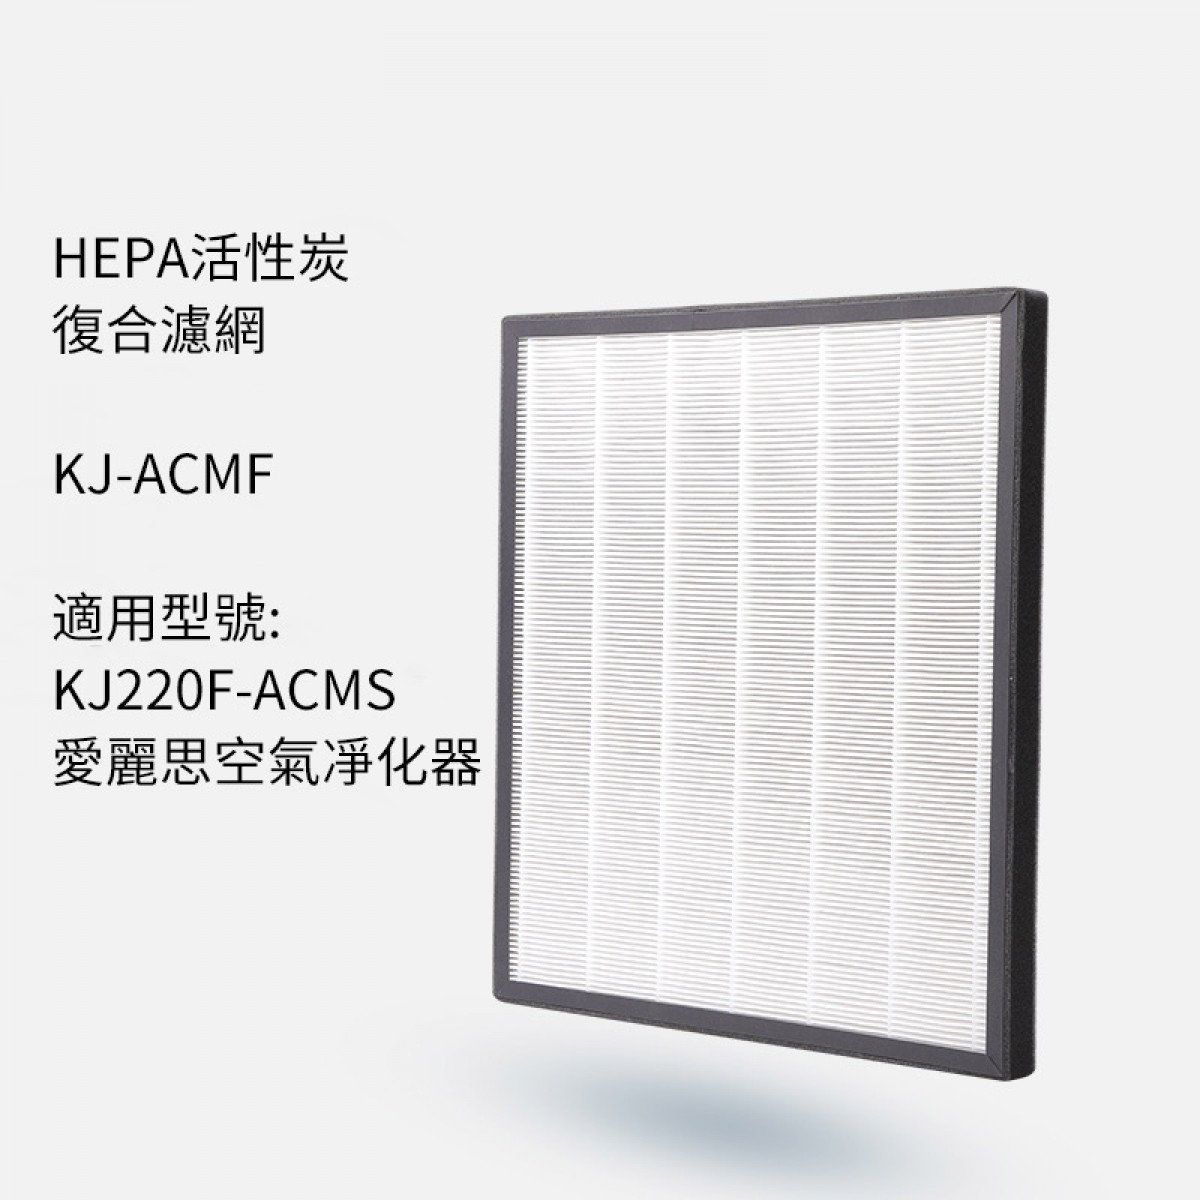 活性炭復合凈化器濾網KJ-ACMF適用於KJ220F-ACMS凈化器